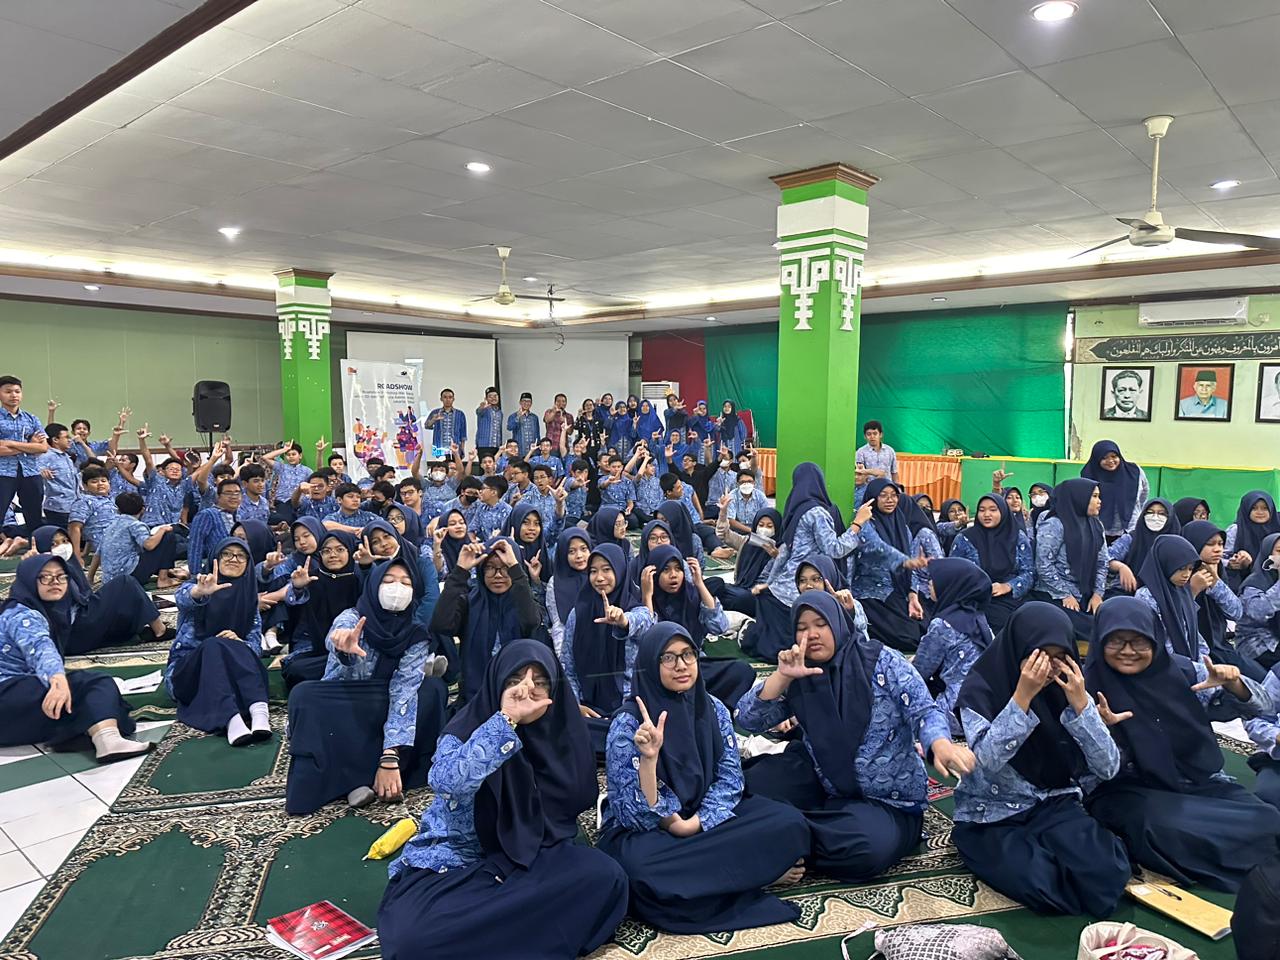 Roadshow Workshop Membaca Di SMP Muhammadiyah 31